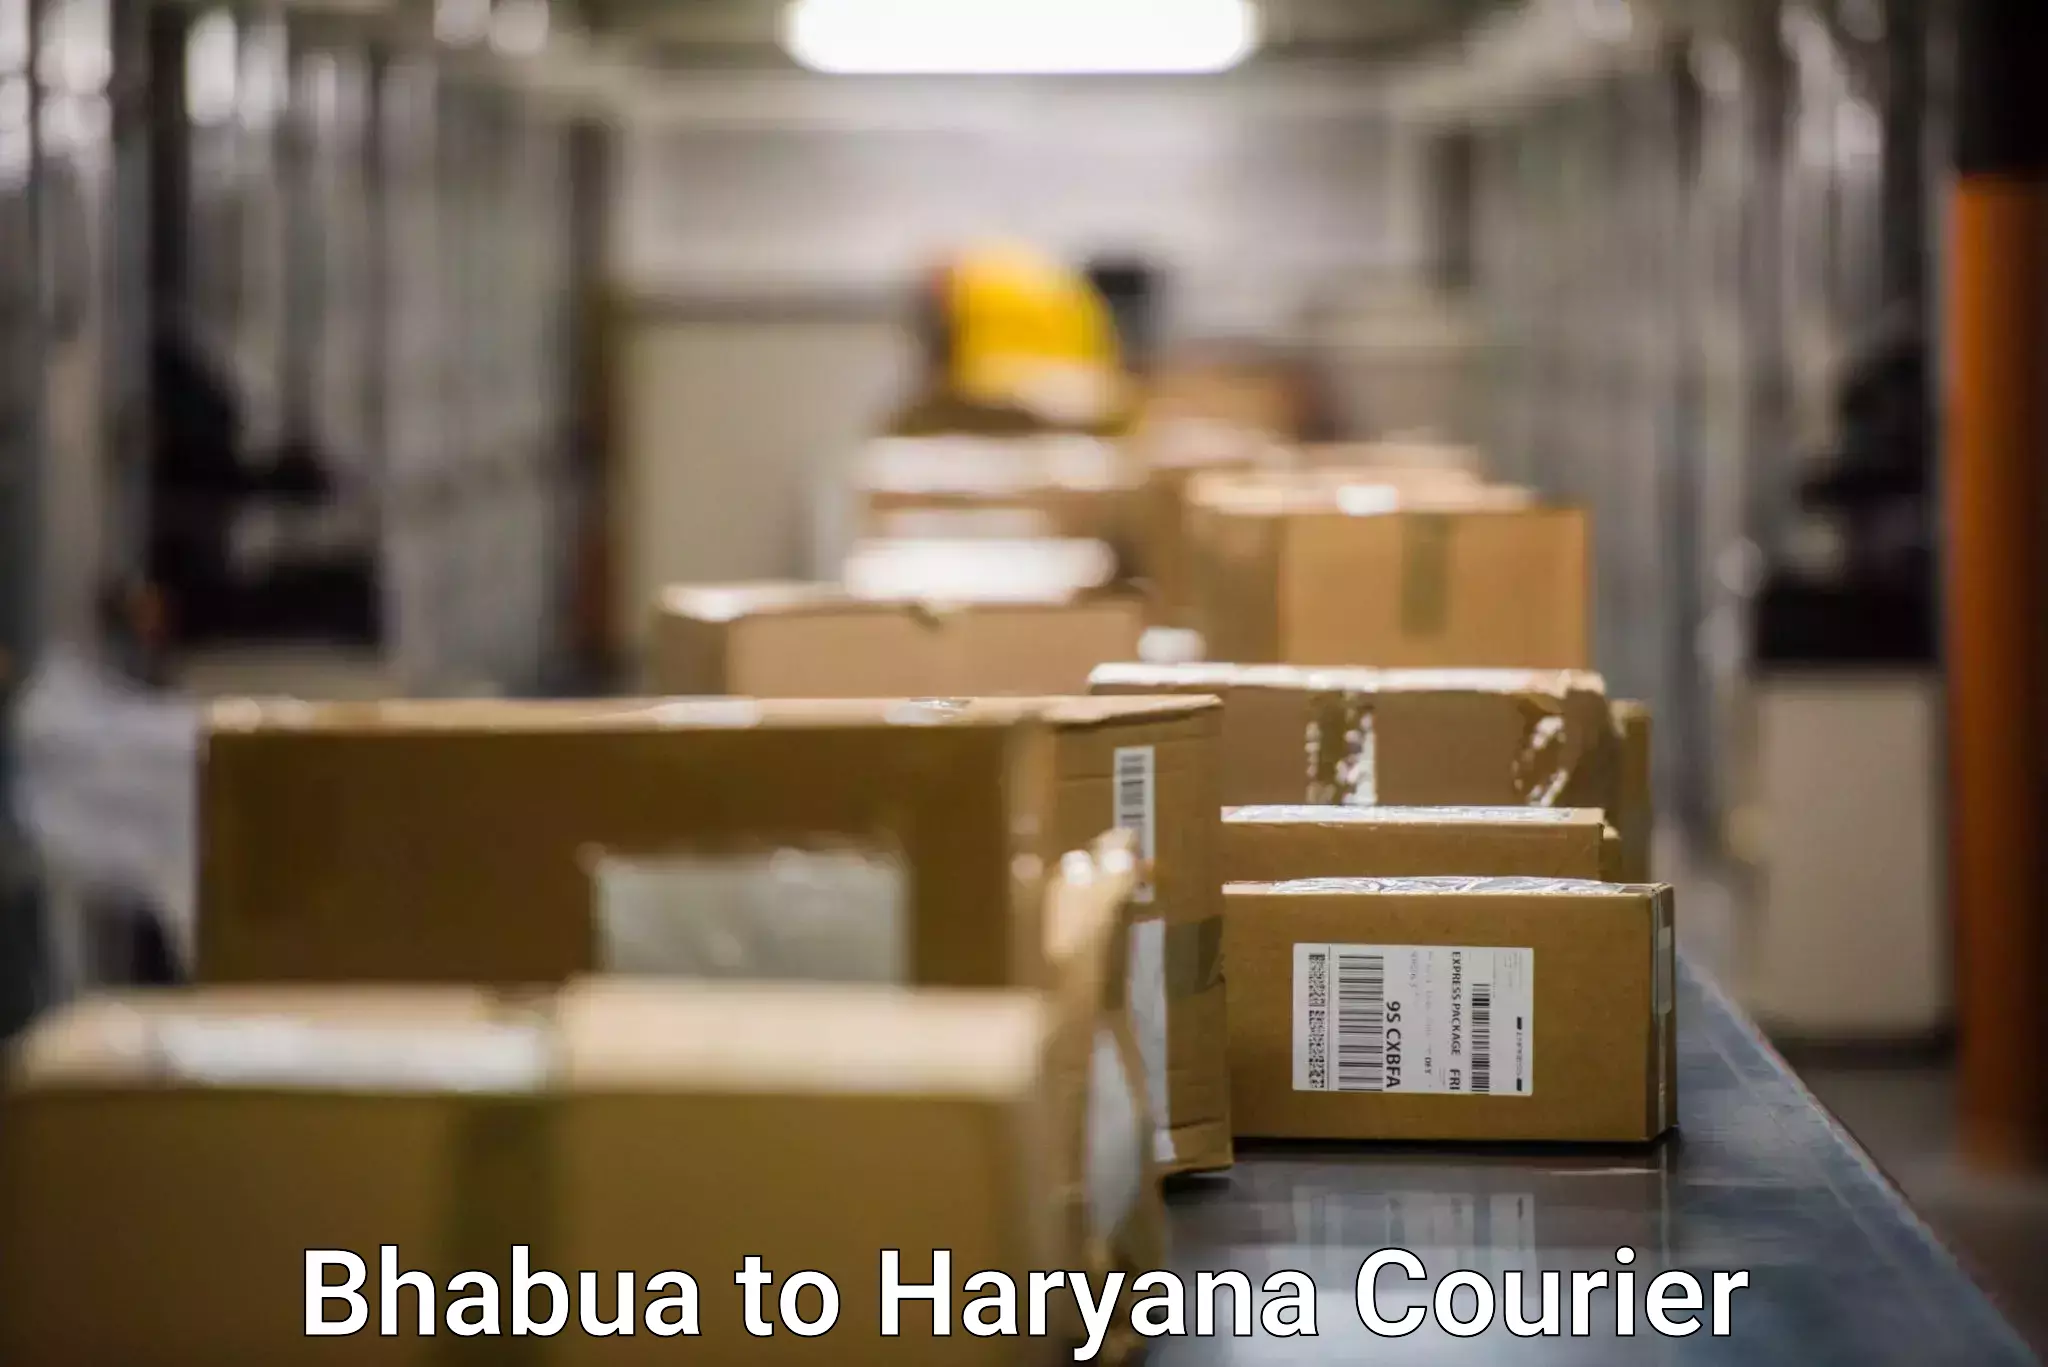 Cargo delivery service Bhabua to Haryana